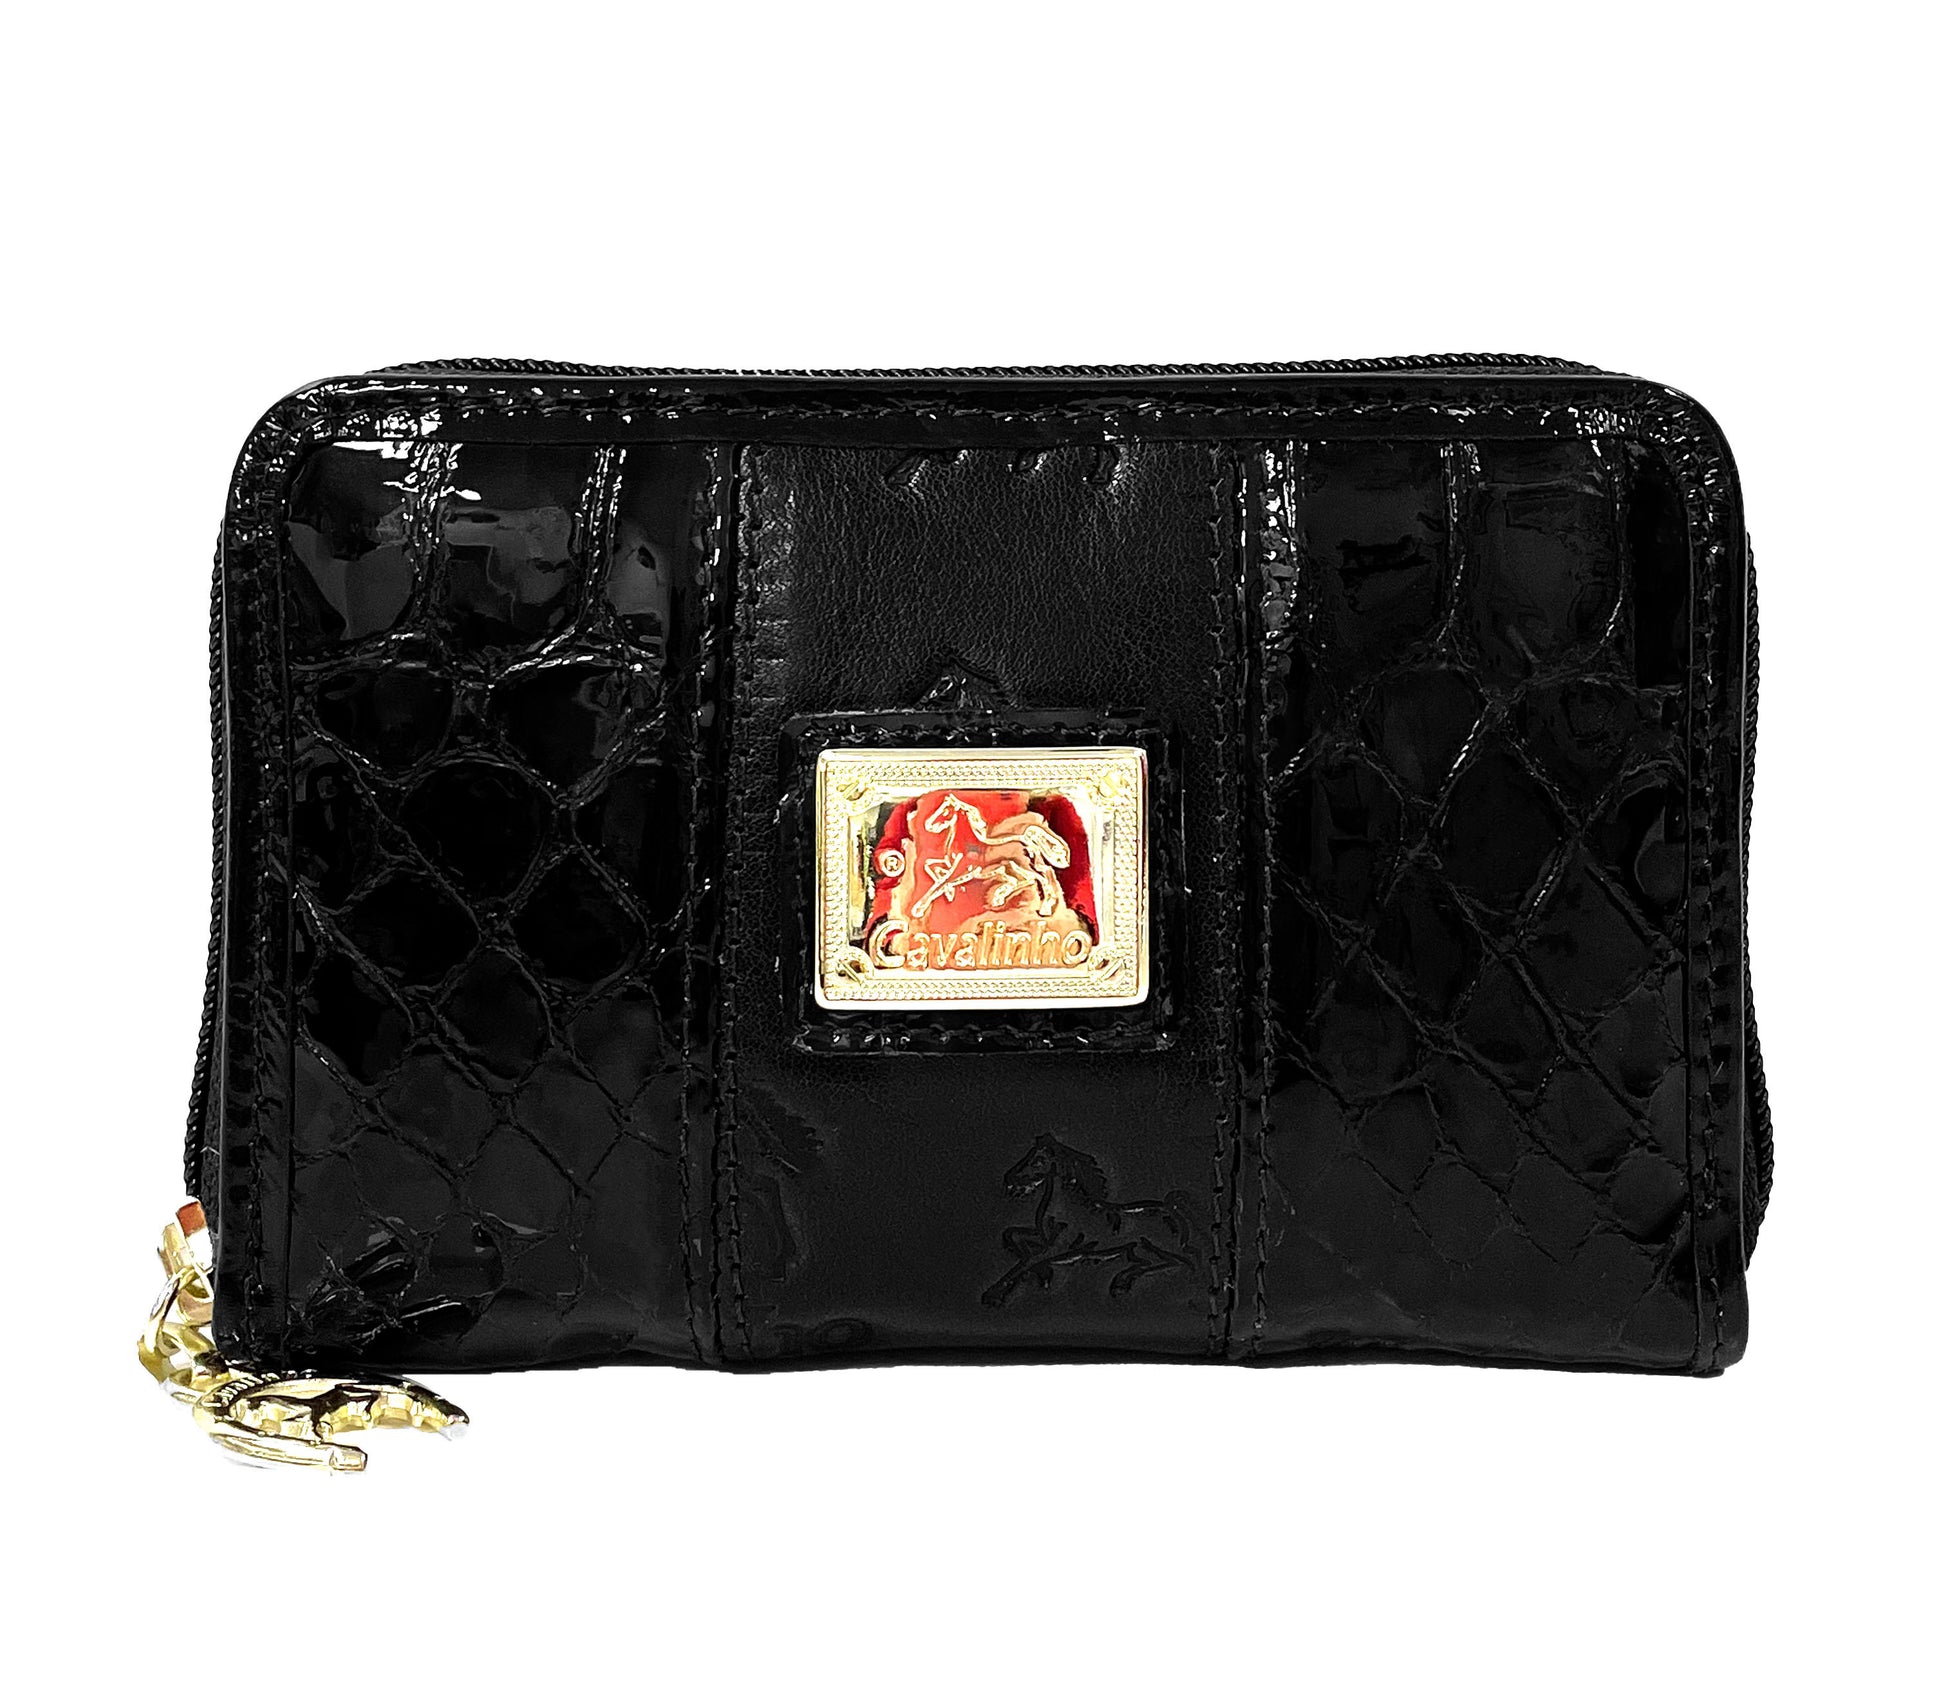 Cavalinho Honor Leather Card Holder Wallet - Black - 28190217.01.99_1